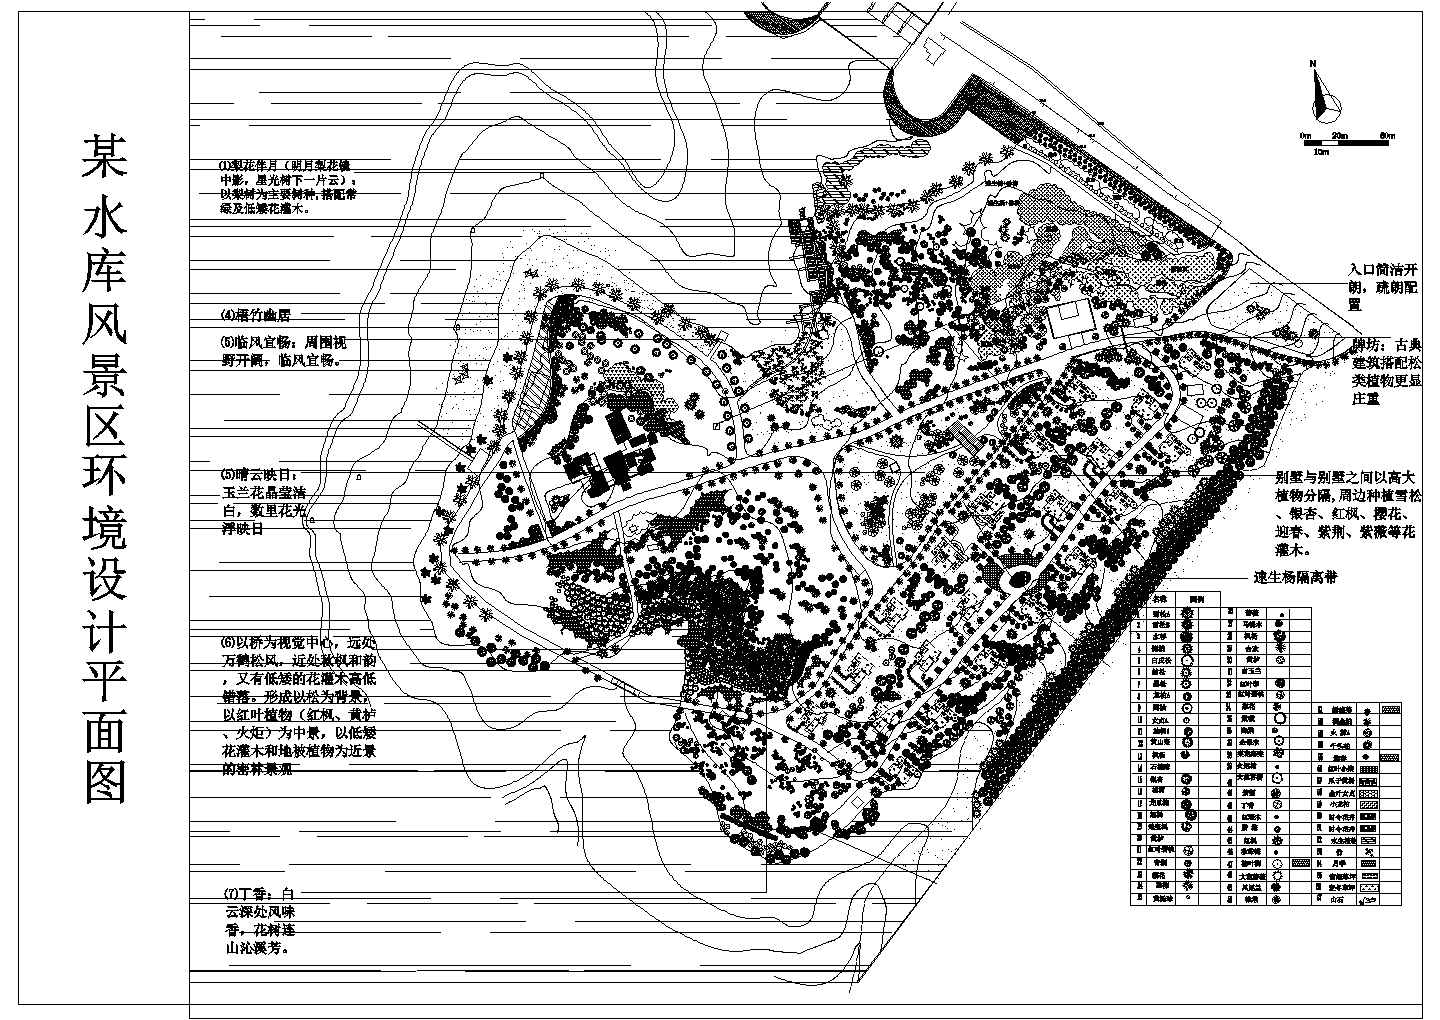 水库风景区 景观规划方案设计cad图纸